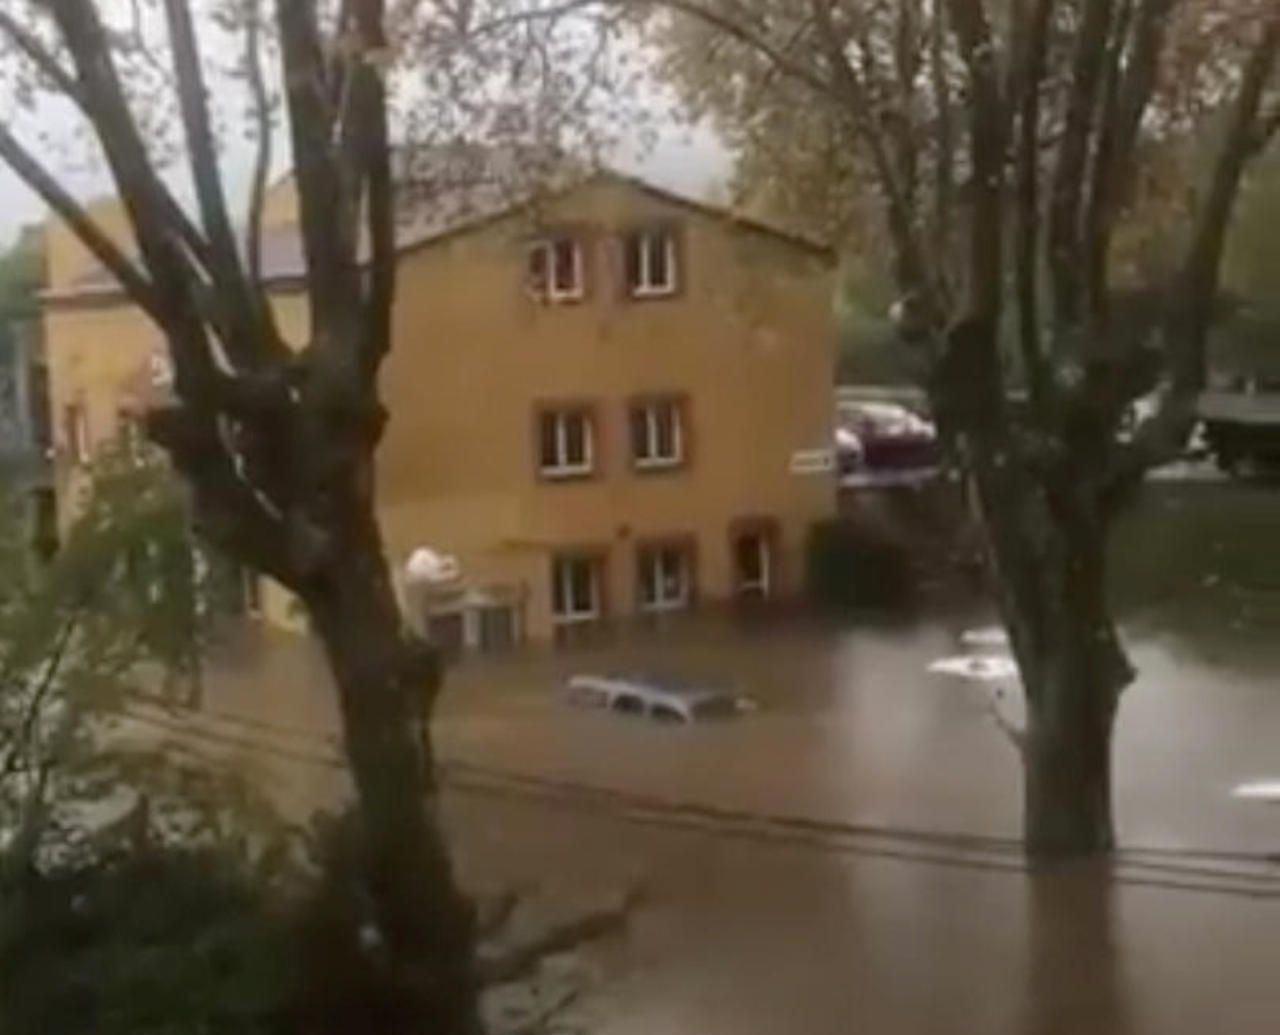 Inondations dans le Sud-Est : les pompiers réalisent 98 sauvetages, deux disparus dans le Var